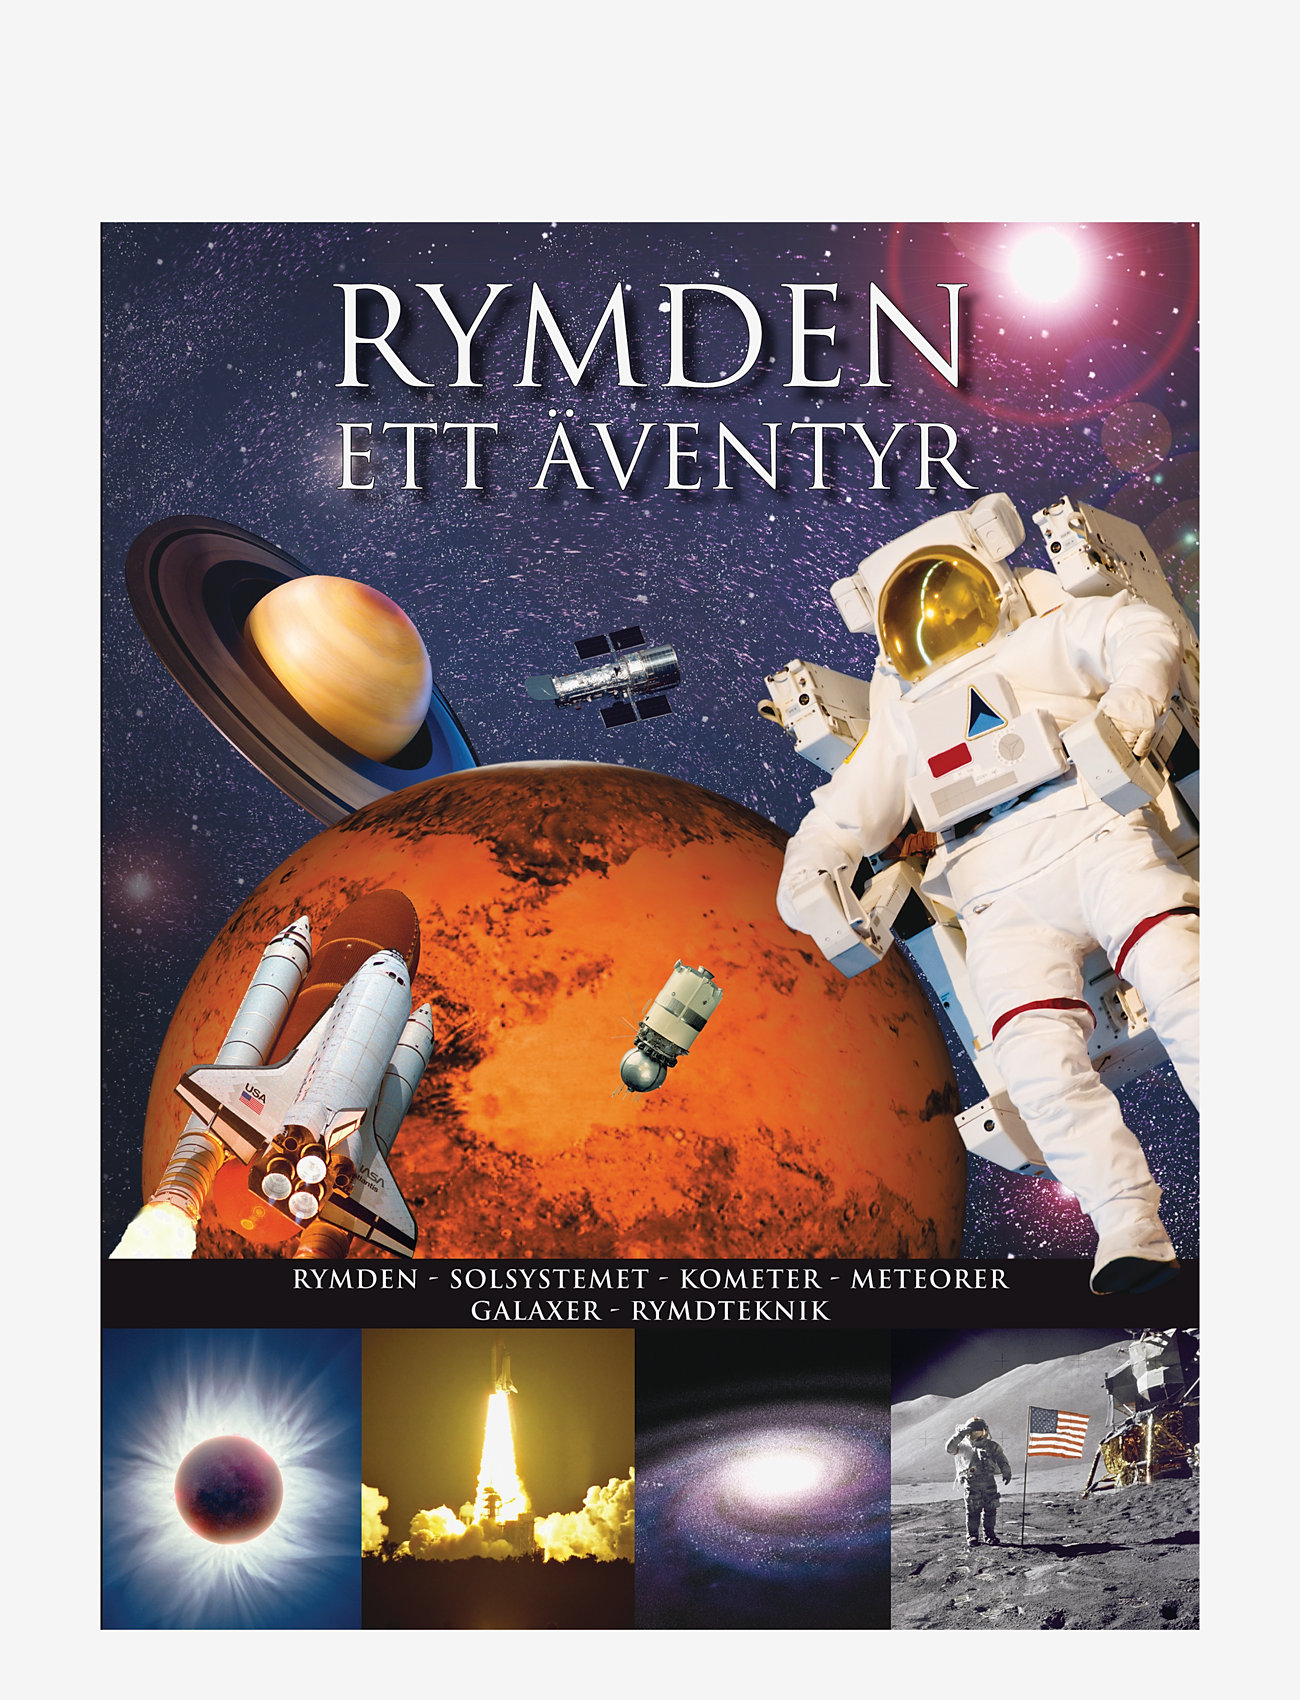 GLOBE - Rymden - ett äventyr - lowest prices - children's book - 0